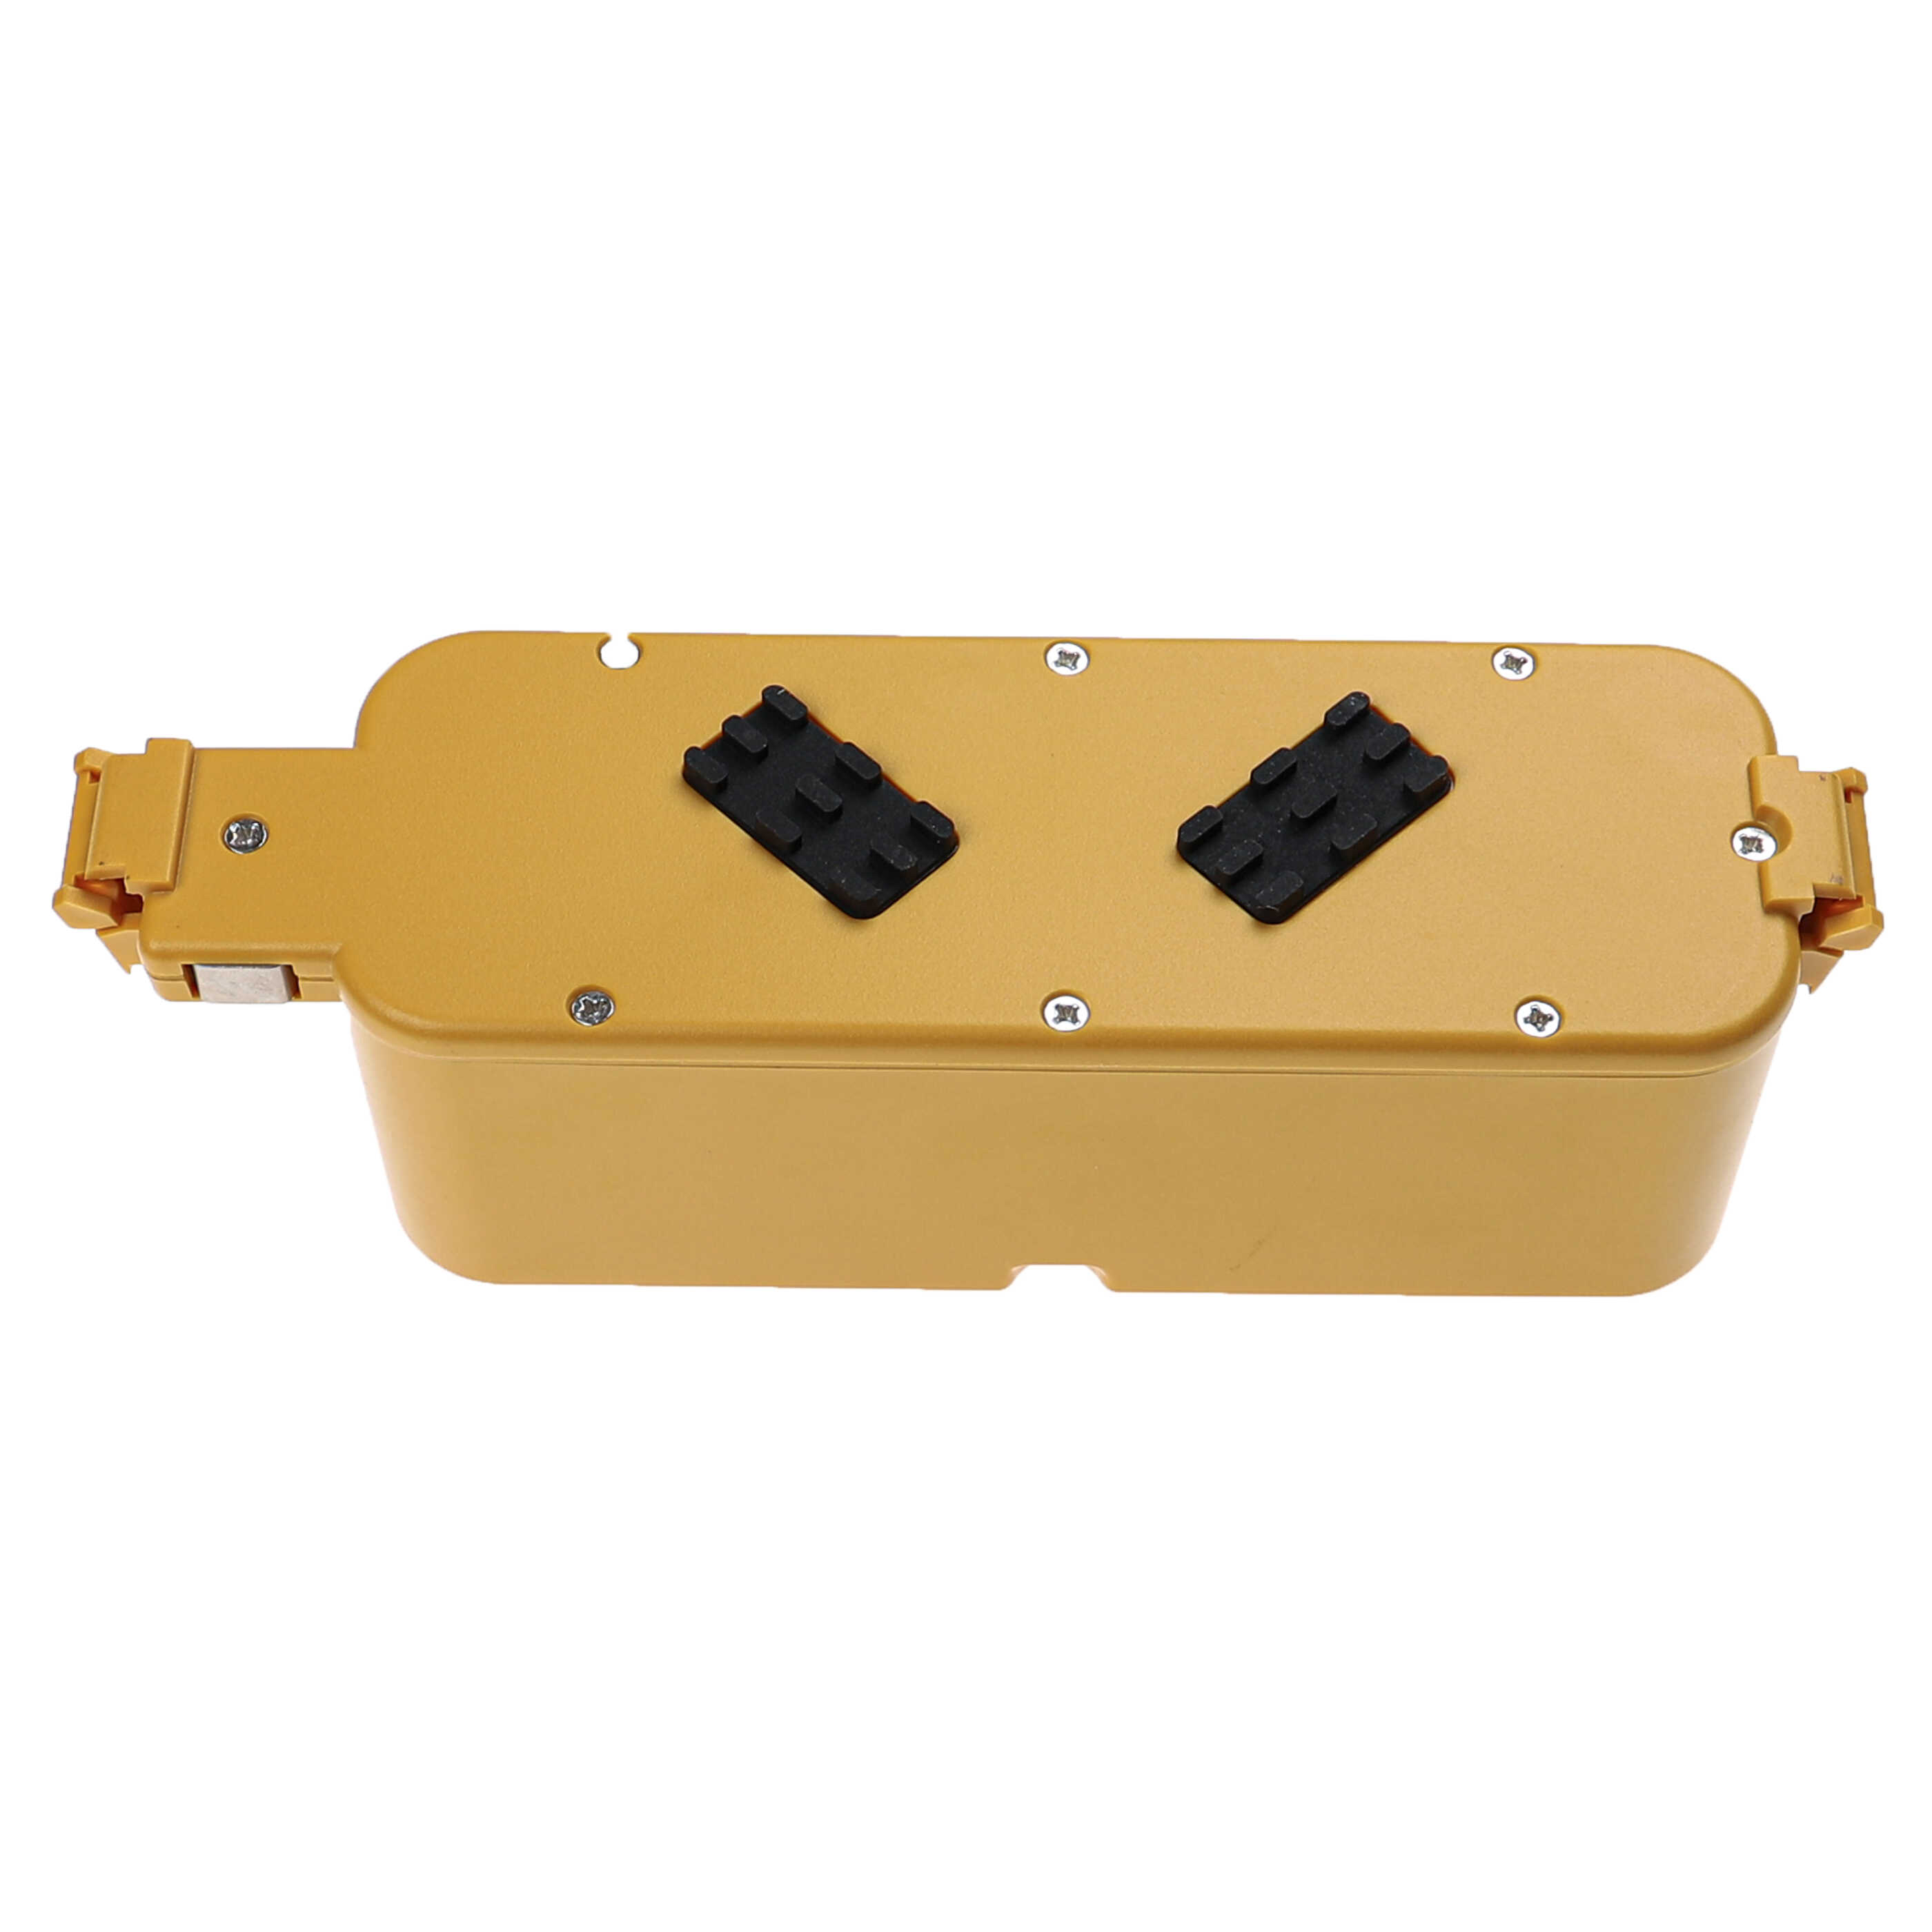 Batteria sostituisce 17373, APS 4905, 11700 per robot aspiratore iRobot - 2500mAh 14,4V NiMH giallo